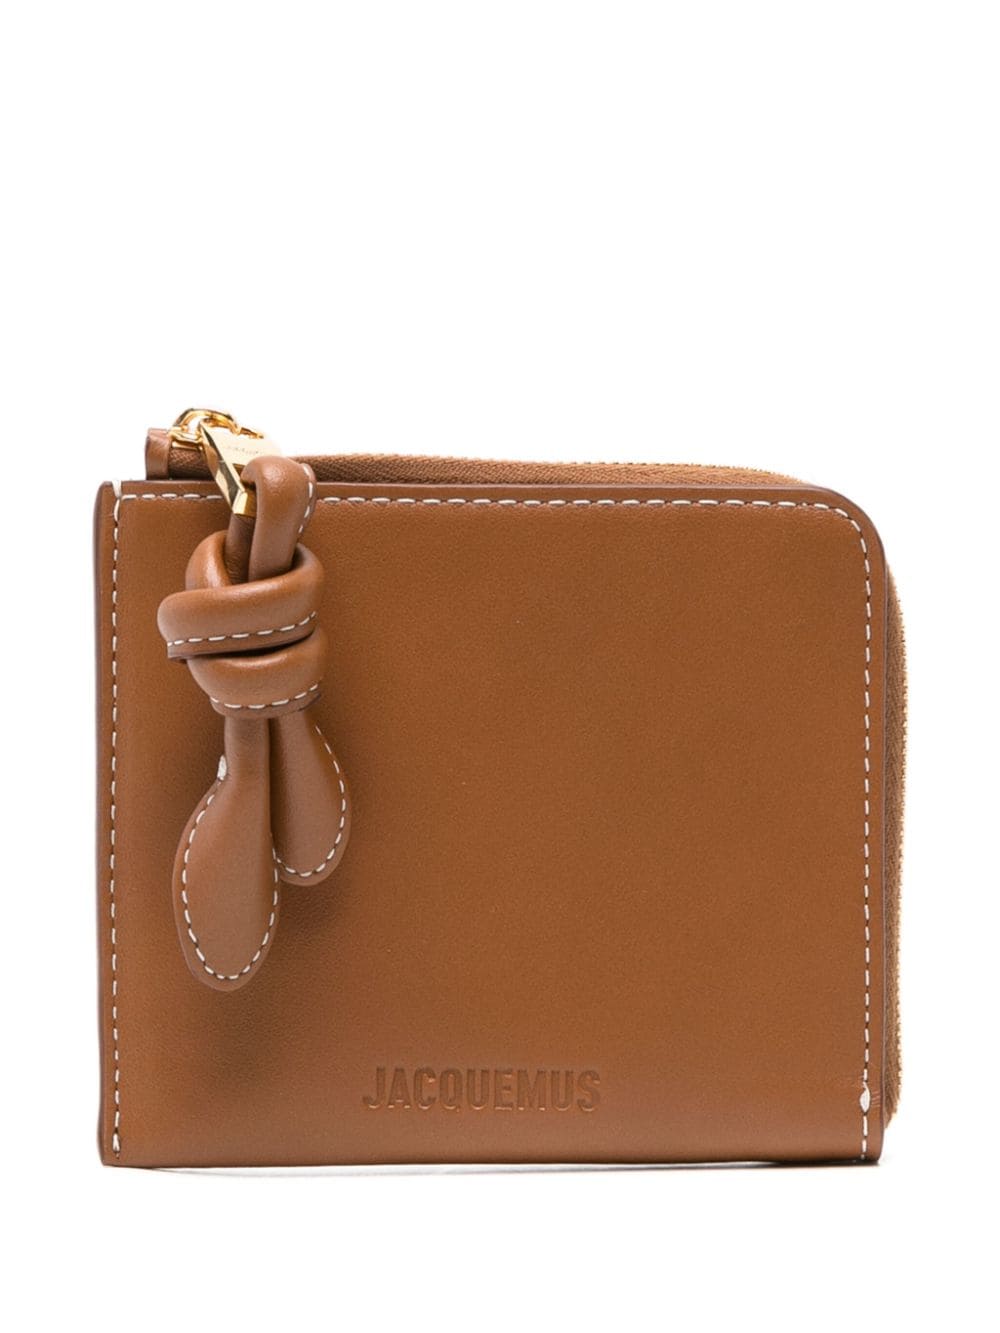 Jacquemus Le Porte-Monnaie Tourni leather wallet - Brown von Jacquemus